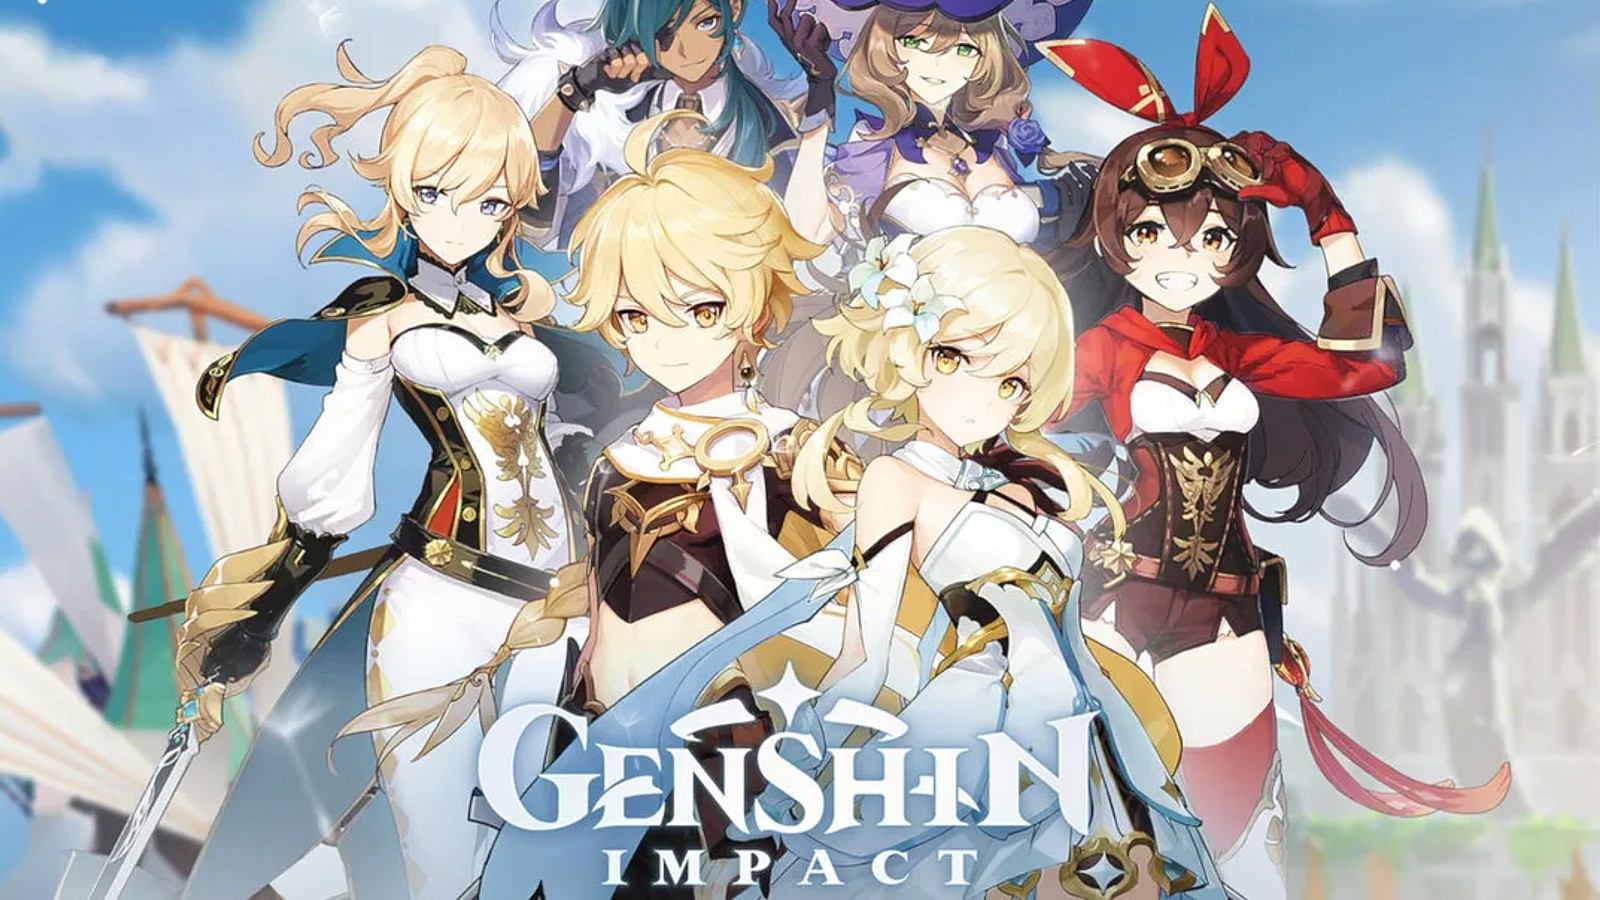 Gambar sampul Genshin Impact yang menampilkan banyak karakter